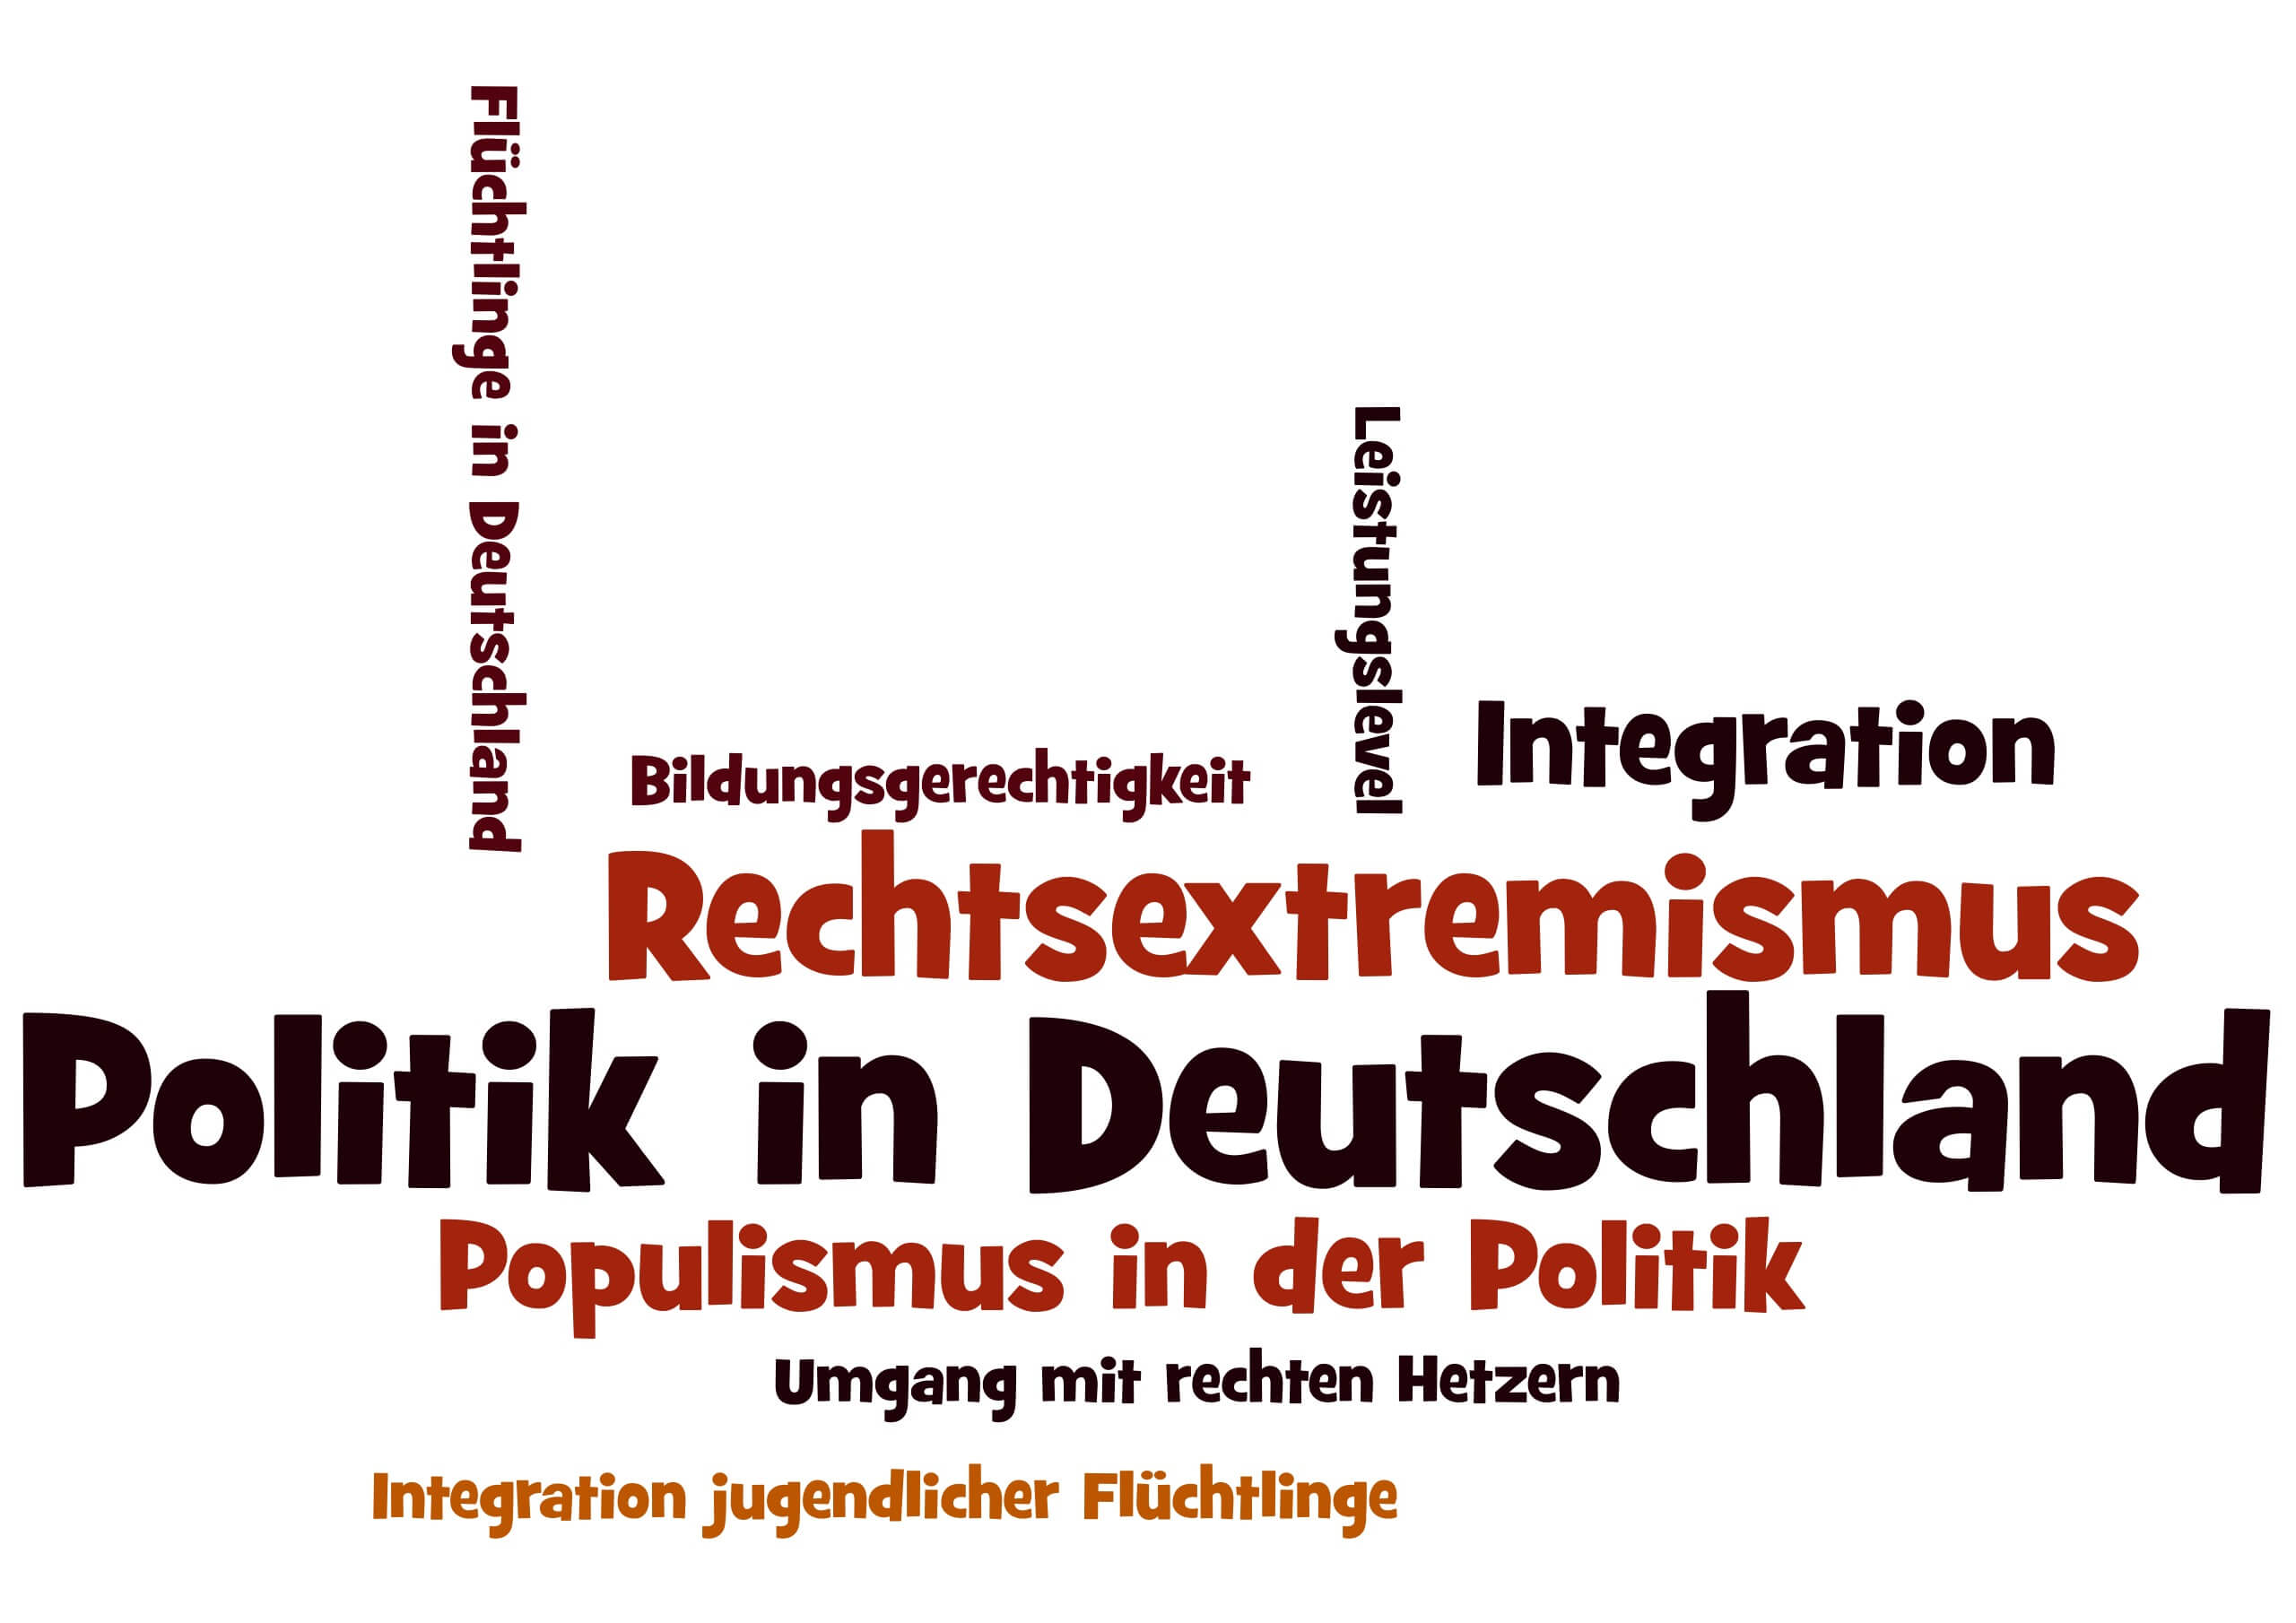 Ausgangspunkt der Gruppe "Politik in Deutschland"